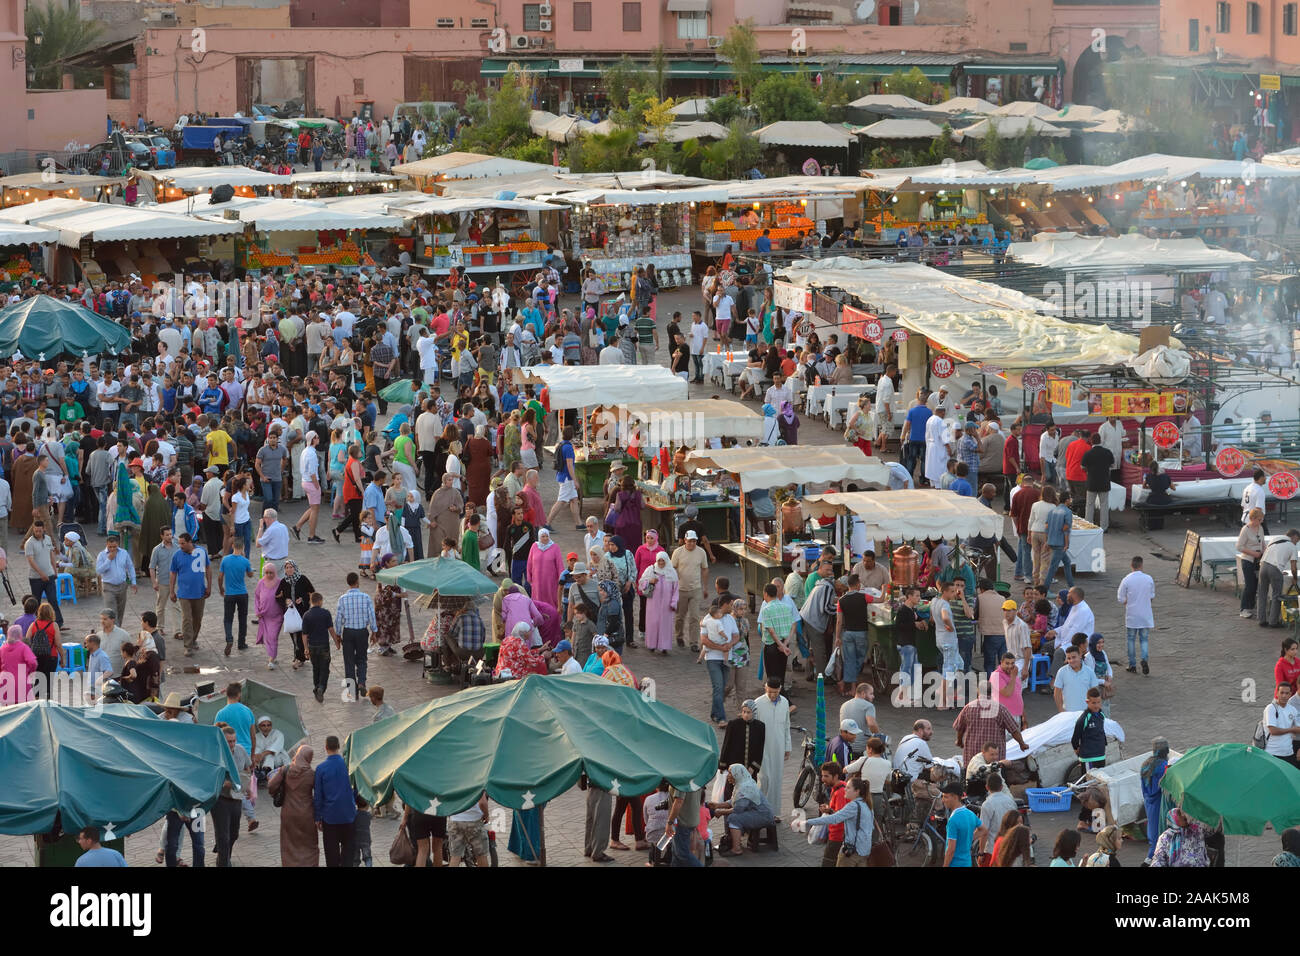 Des stands de nourriture en plein air place Djemaa el-Fna, Patrimoine Mondial de l'Unesco. Marrakech, Maroc Banque D'Images